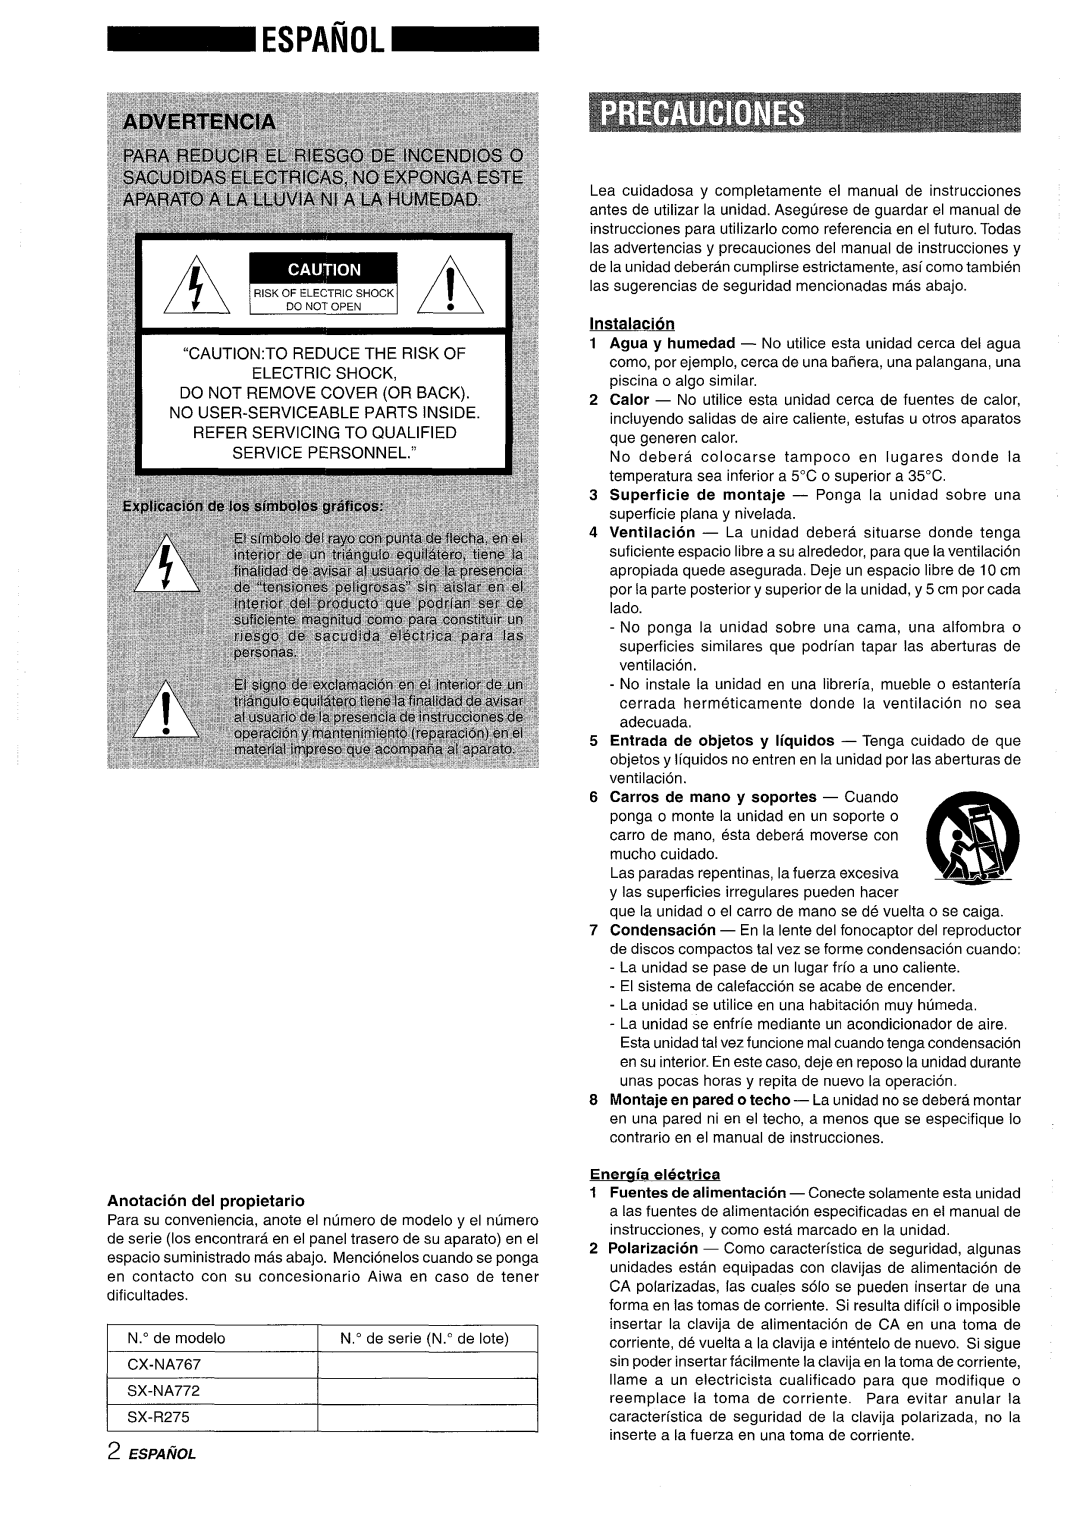 Sony NSX-A767 manual Anotacion del propietario, Instalacion, Carros de mano y soportes - Cuando, Energia electrica 